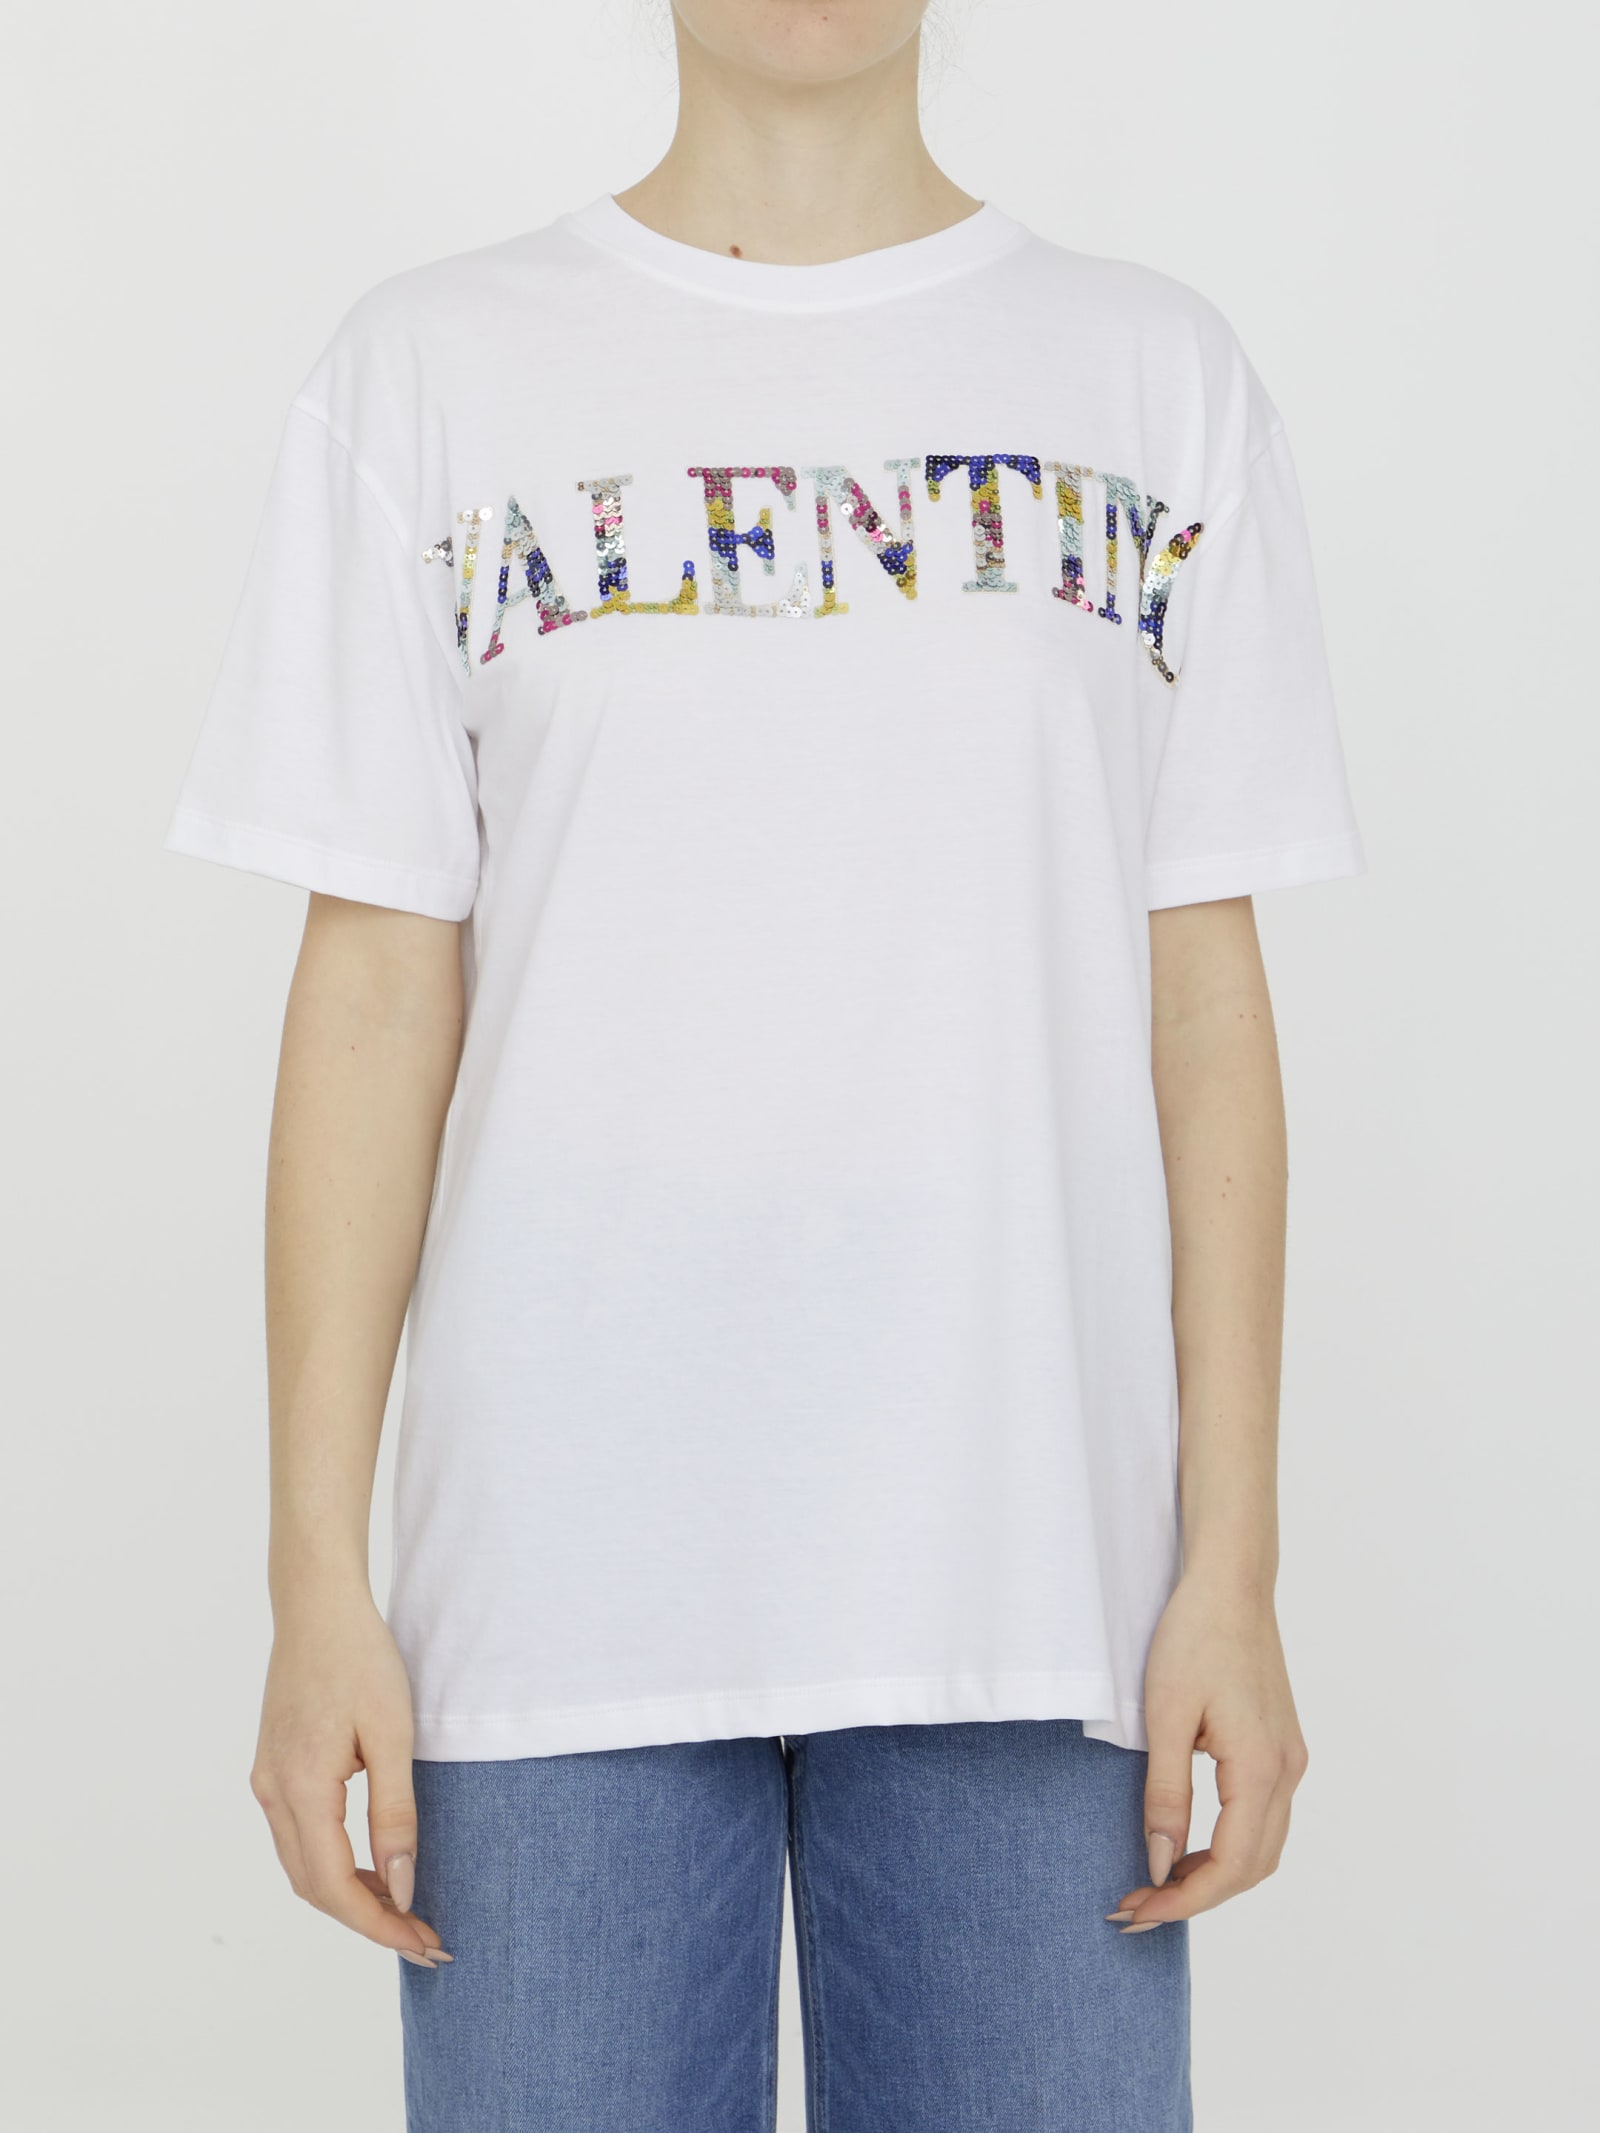 Valentino Garavani Embroidered T-shirt